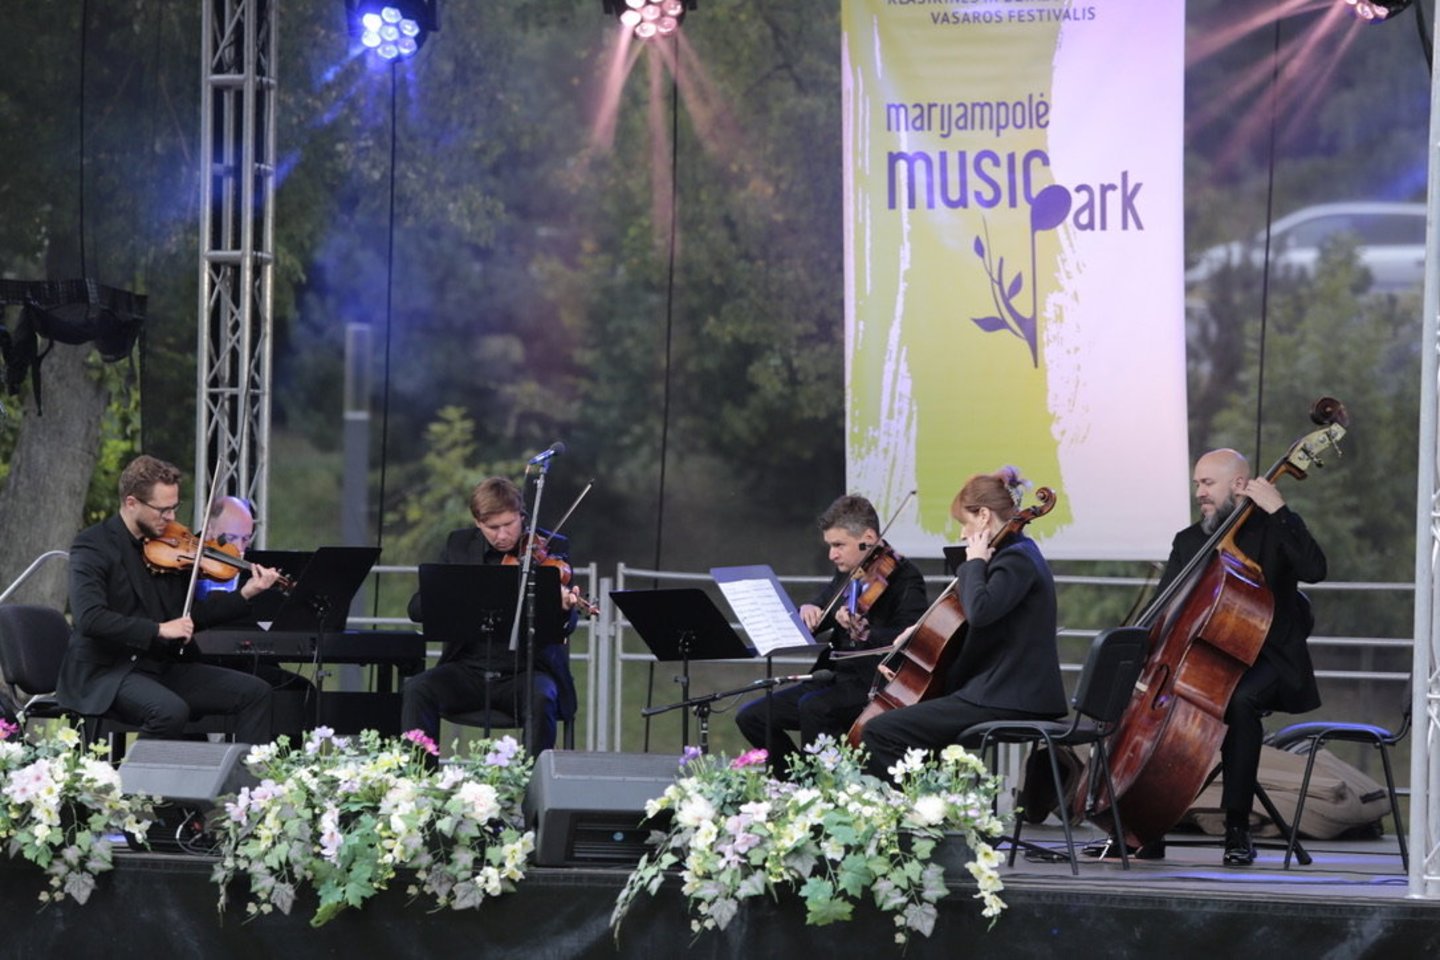 Prasidėjo aštuntasis klasikinės ir džiazo muzikos vasaros festivalis „Marijampolė Music Park“.<br>Organizatorių nuotr.